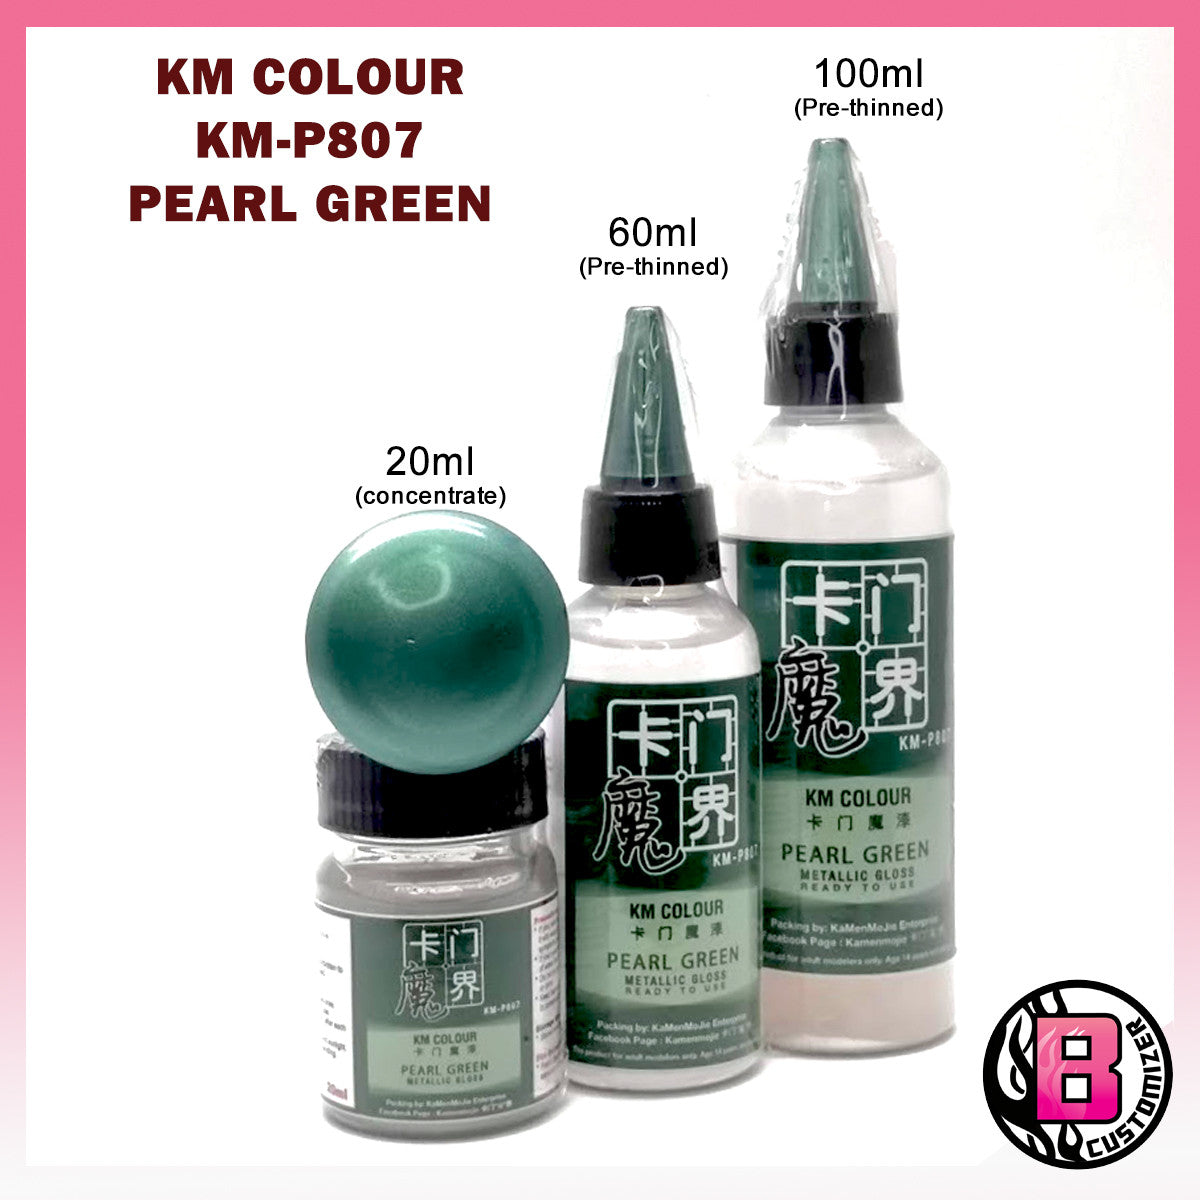 KM Colour Pearl Green (KM-P807)